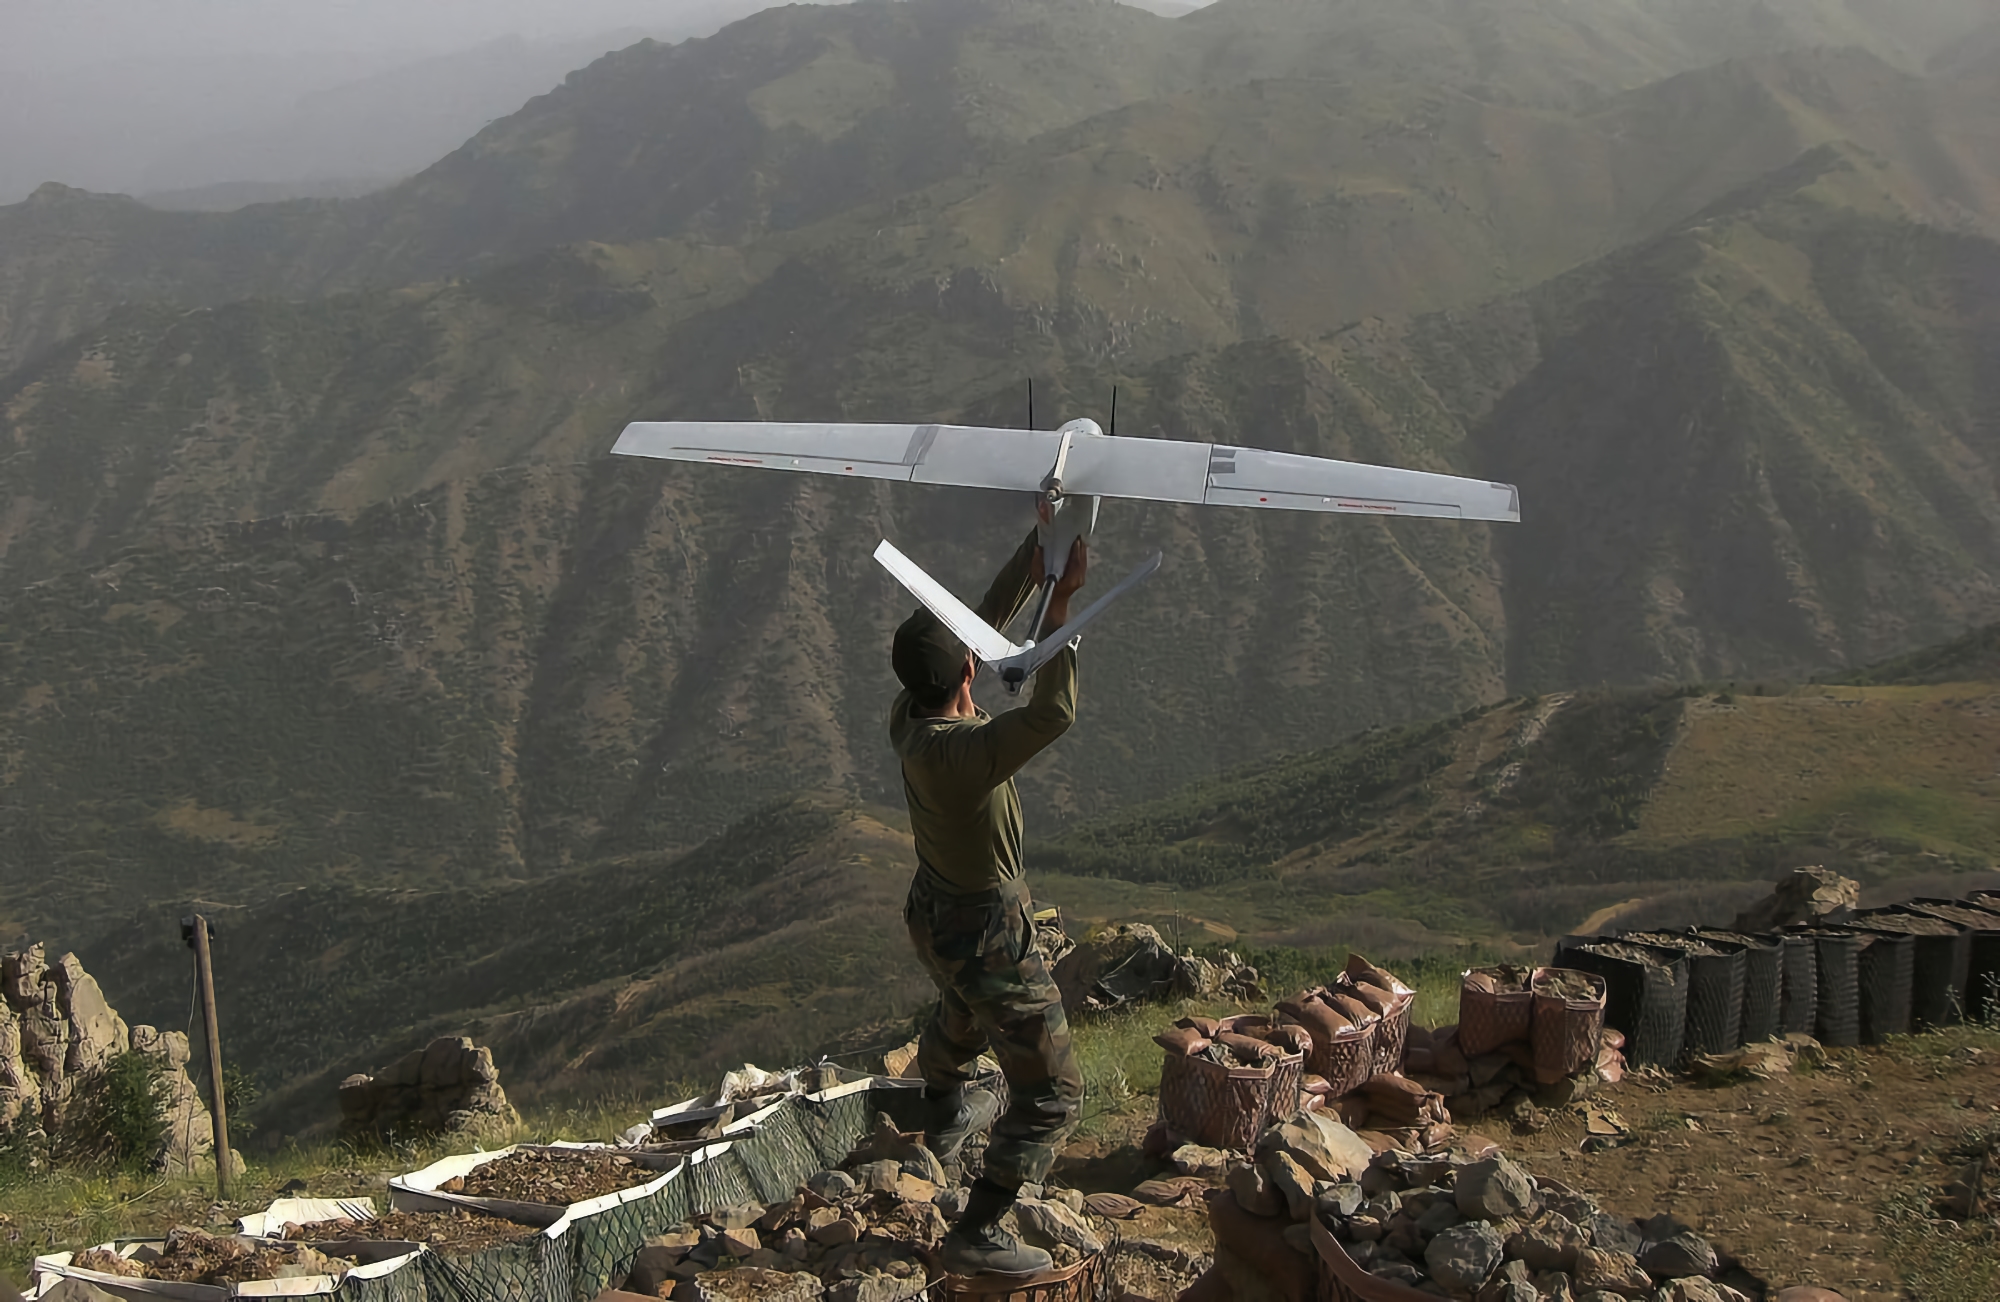 Las AFU muestran en exclusiva imágenes de los mini UAV turcos Bayraktar en acción